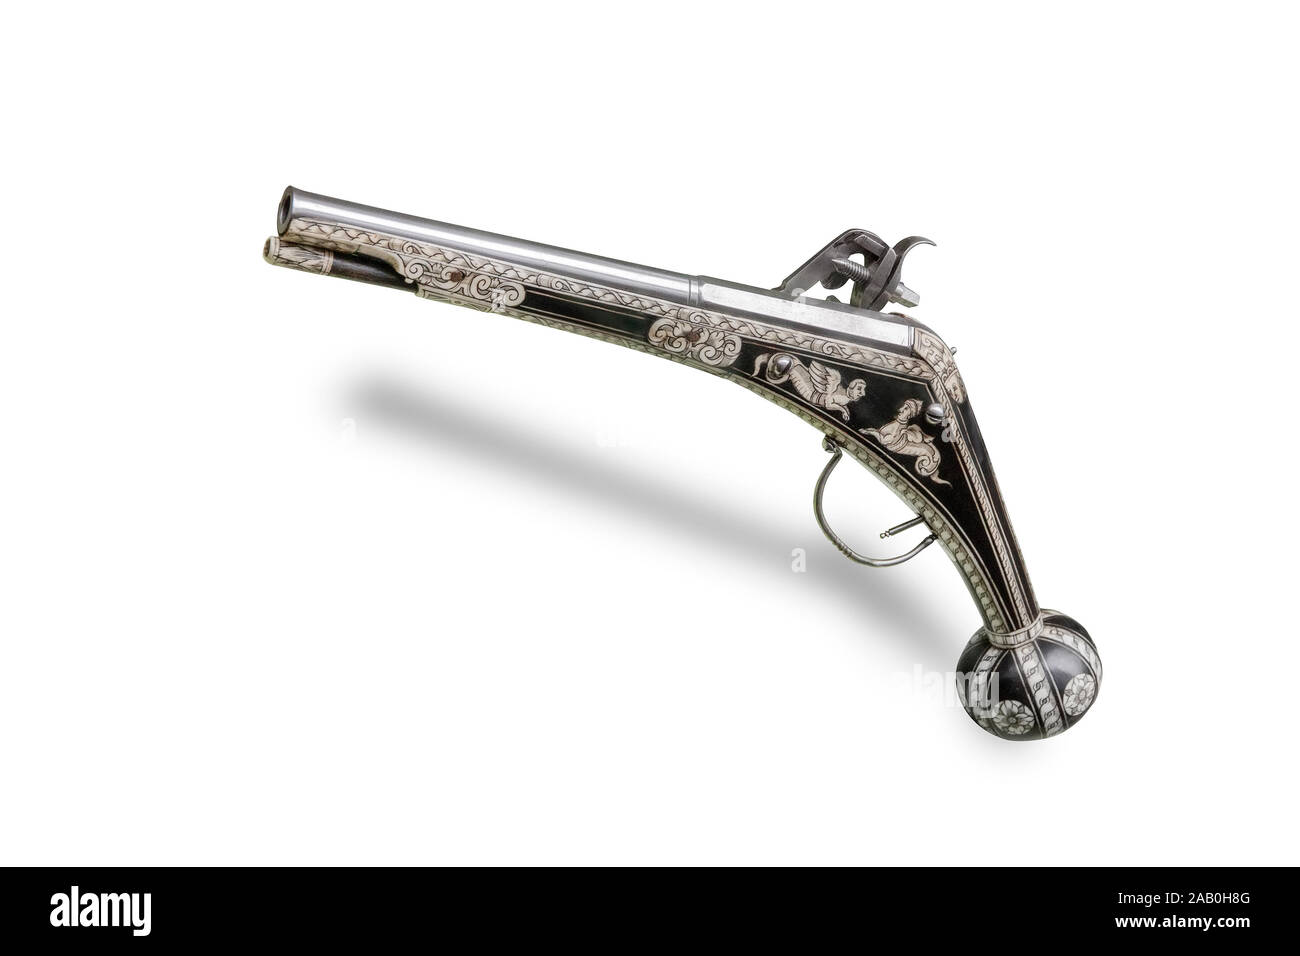 Pistola tedesca (pistola) con wheellock. Alla fine del XVI secolo. Isolato su sfondo bianco Foto Stock